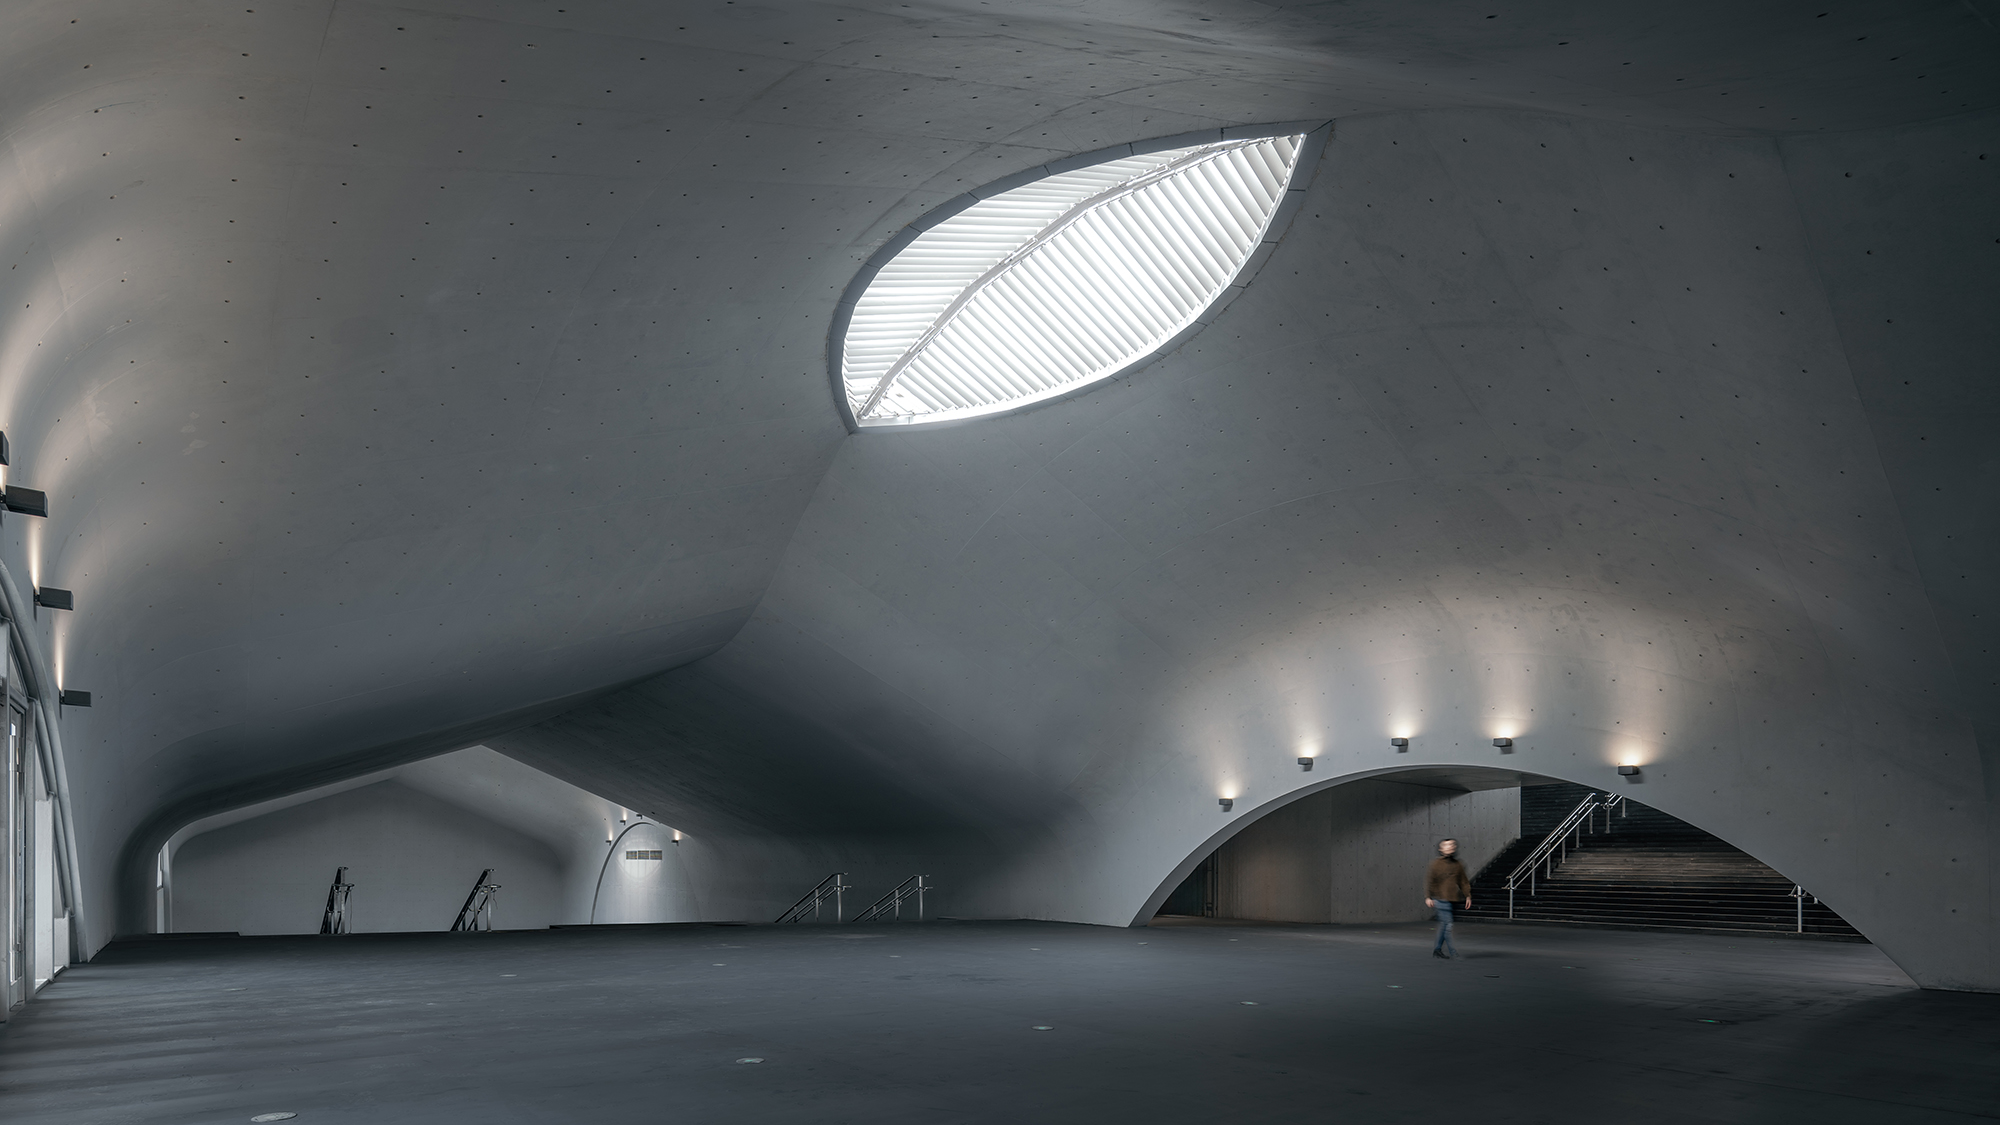 Палац глибокого часу, Китай, від Wutopia Lab. Це підземний художній музей у Чанчуні, увінчаний хвилястим бетонним дахом, пронизаним отворами у формі очей, які підкреслюють відчуття занурення під воду. Фото CreatAR Images